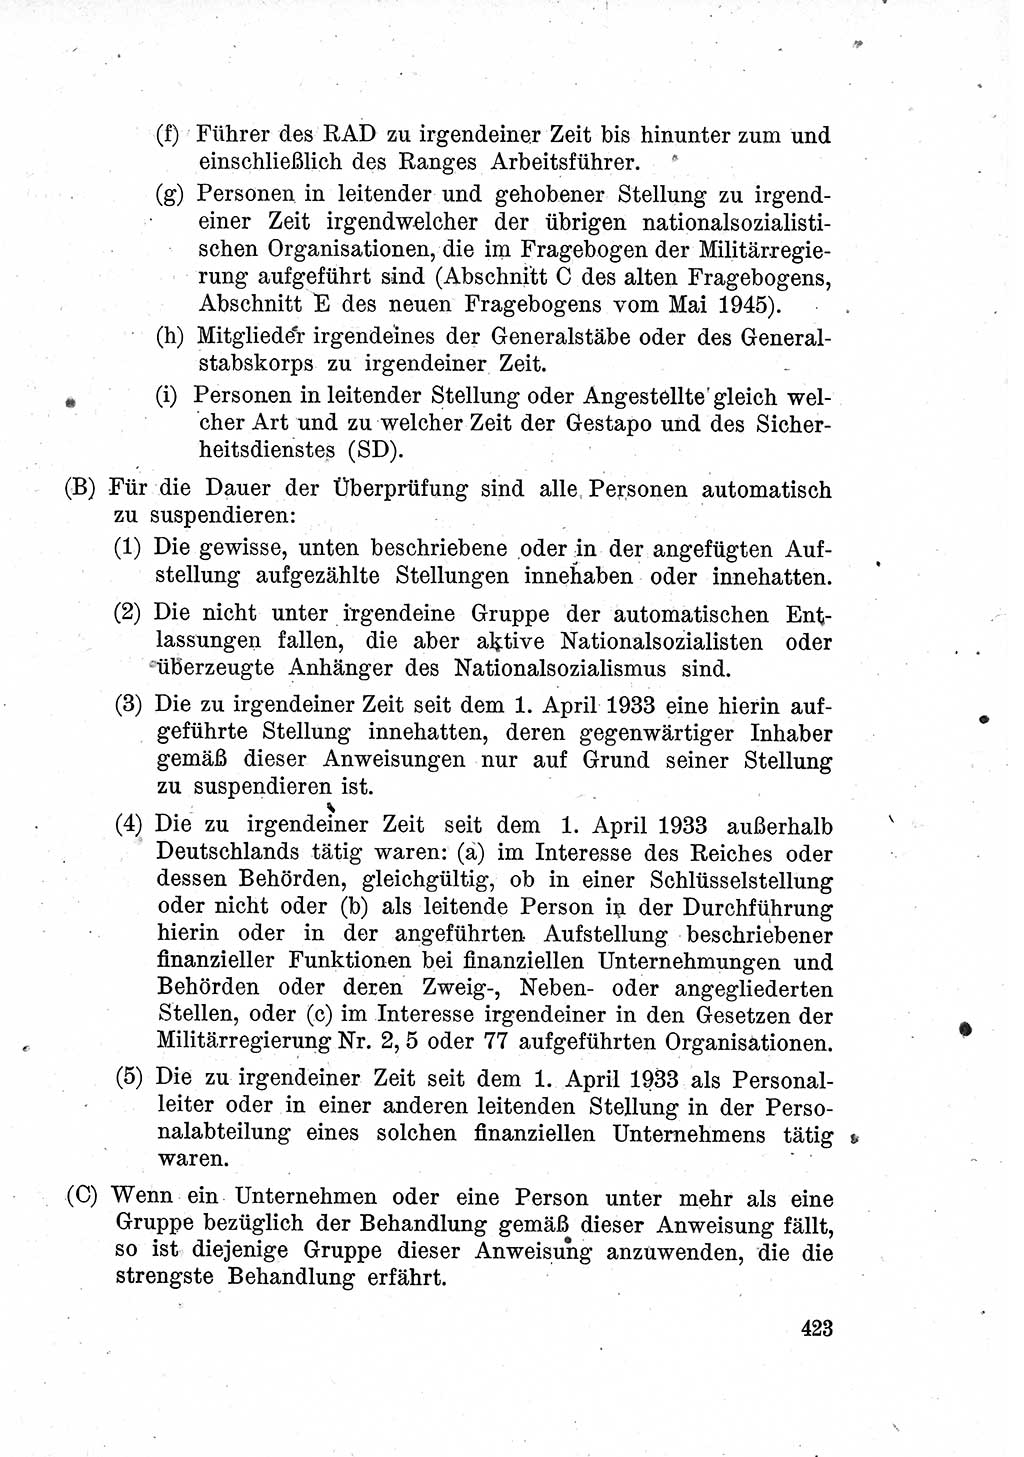 Das Recht der Besatzungsmacht (Deutschland), Proklamationen, Deklerationen, Verordnungen, Gesetze und Bekanntmachungen 1947, Seite 423 (R. Bes. Dtl. 1947, S. 423)